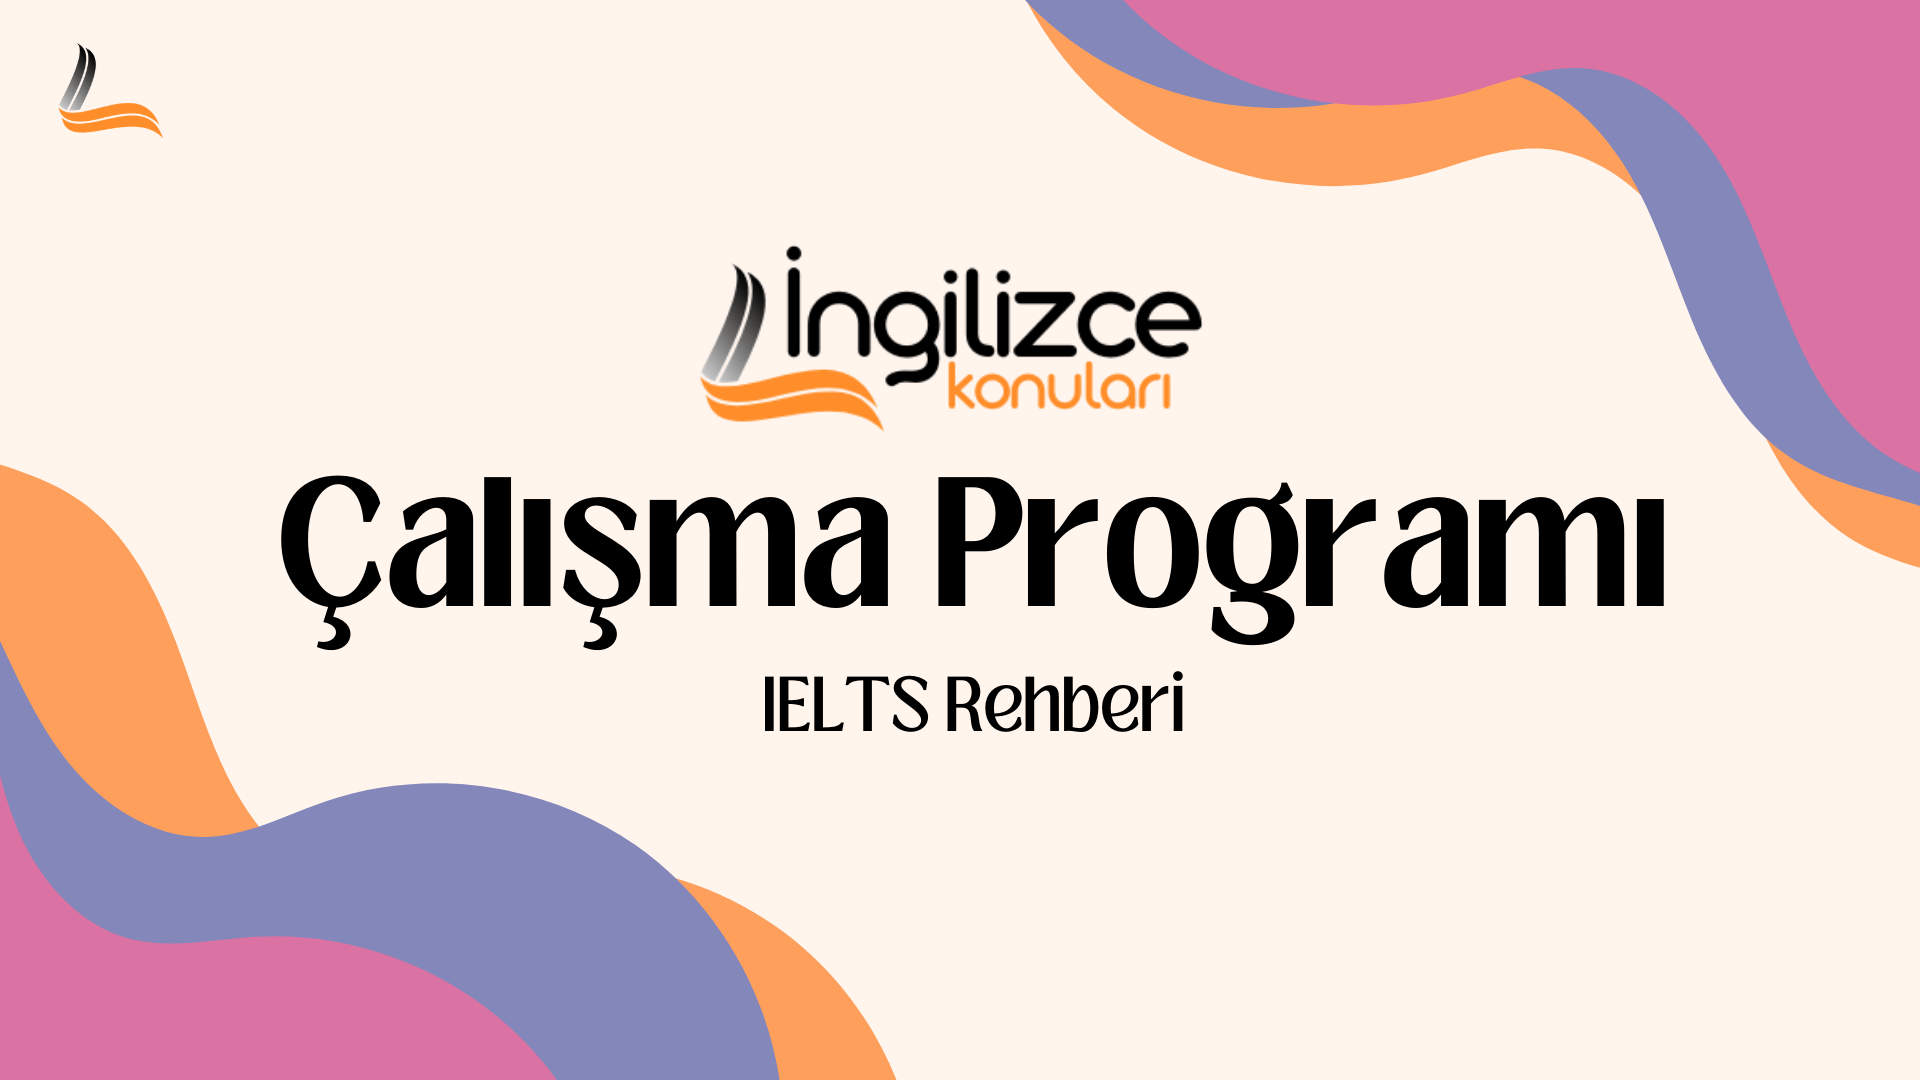 IELTS Calisma Programi